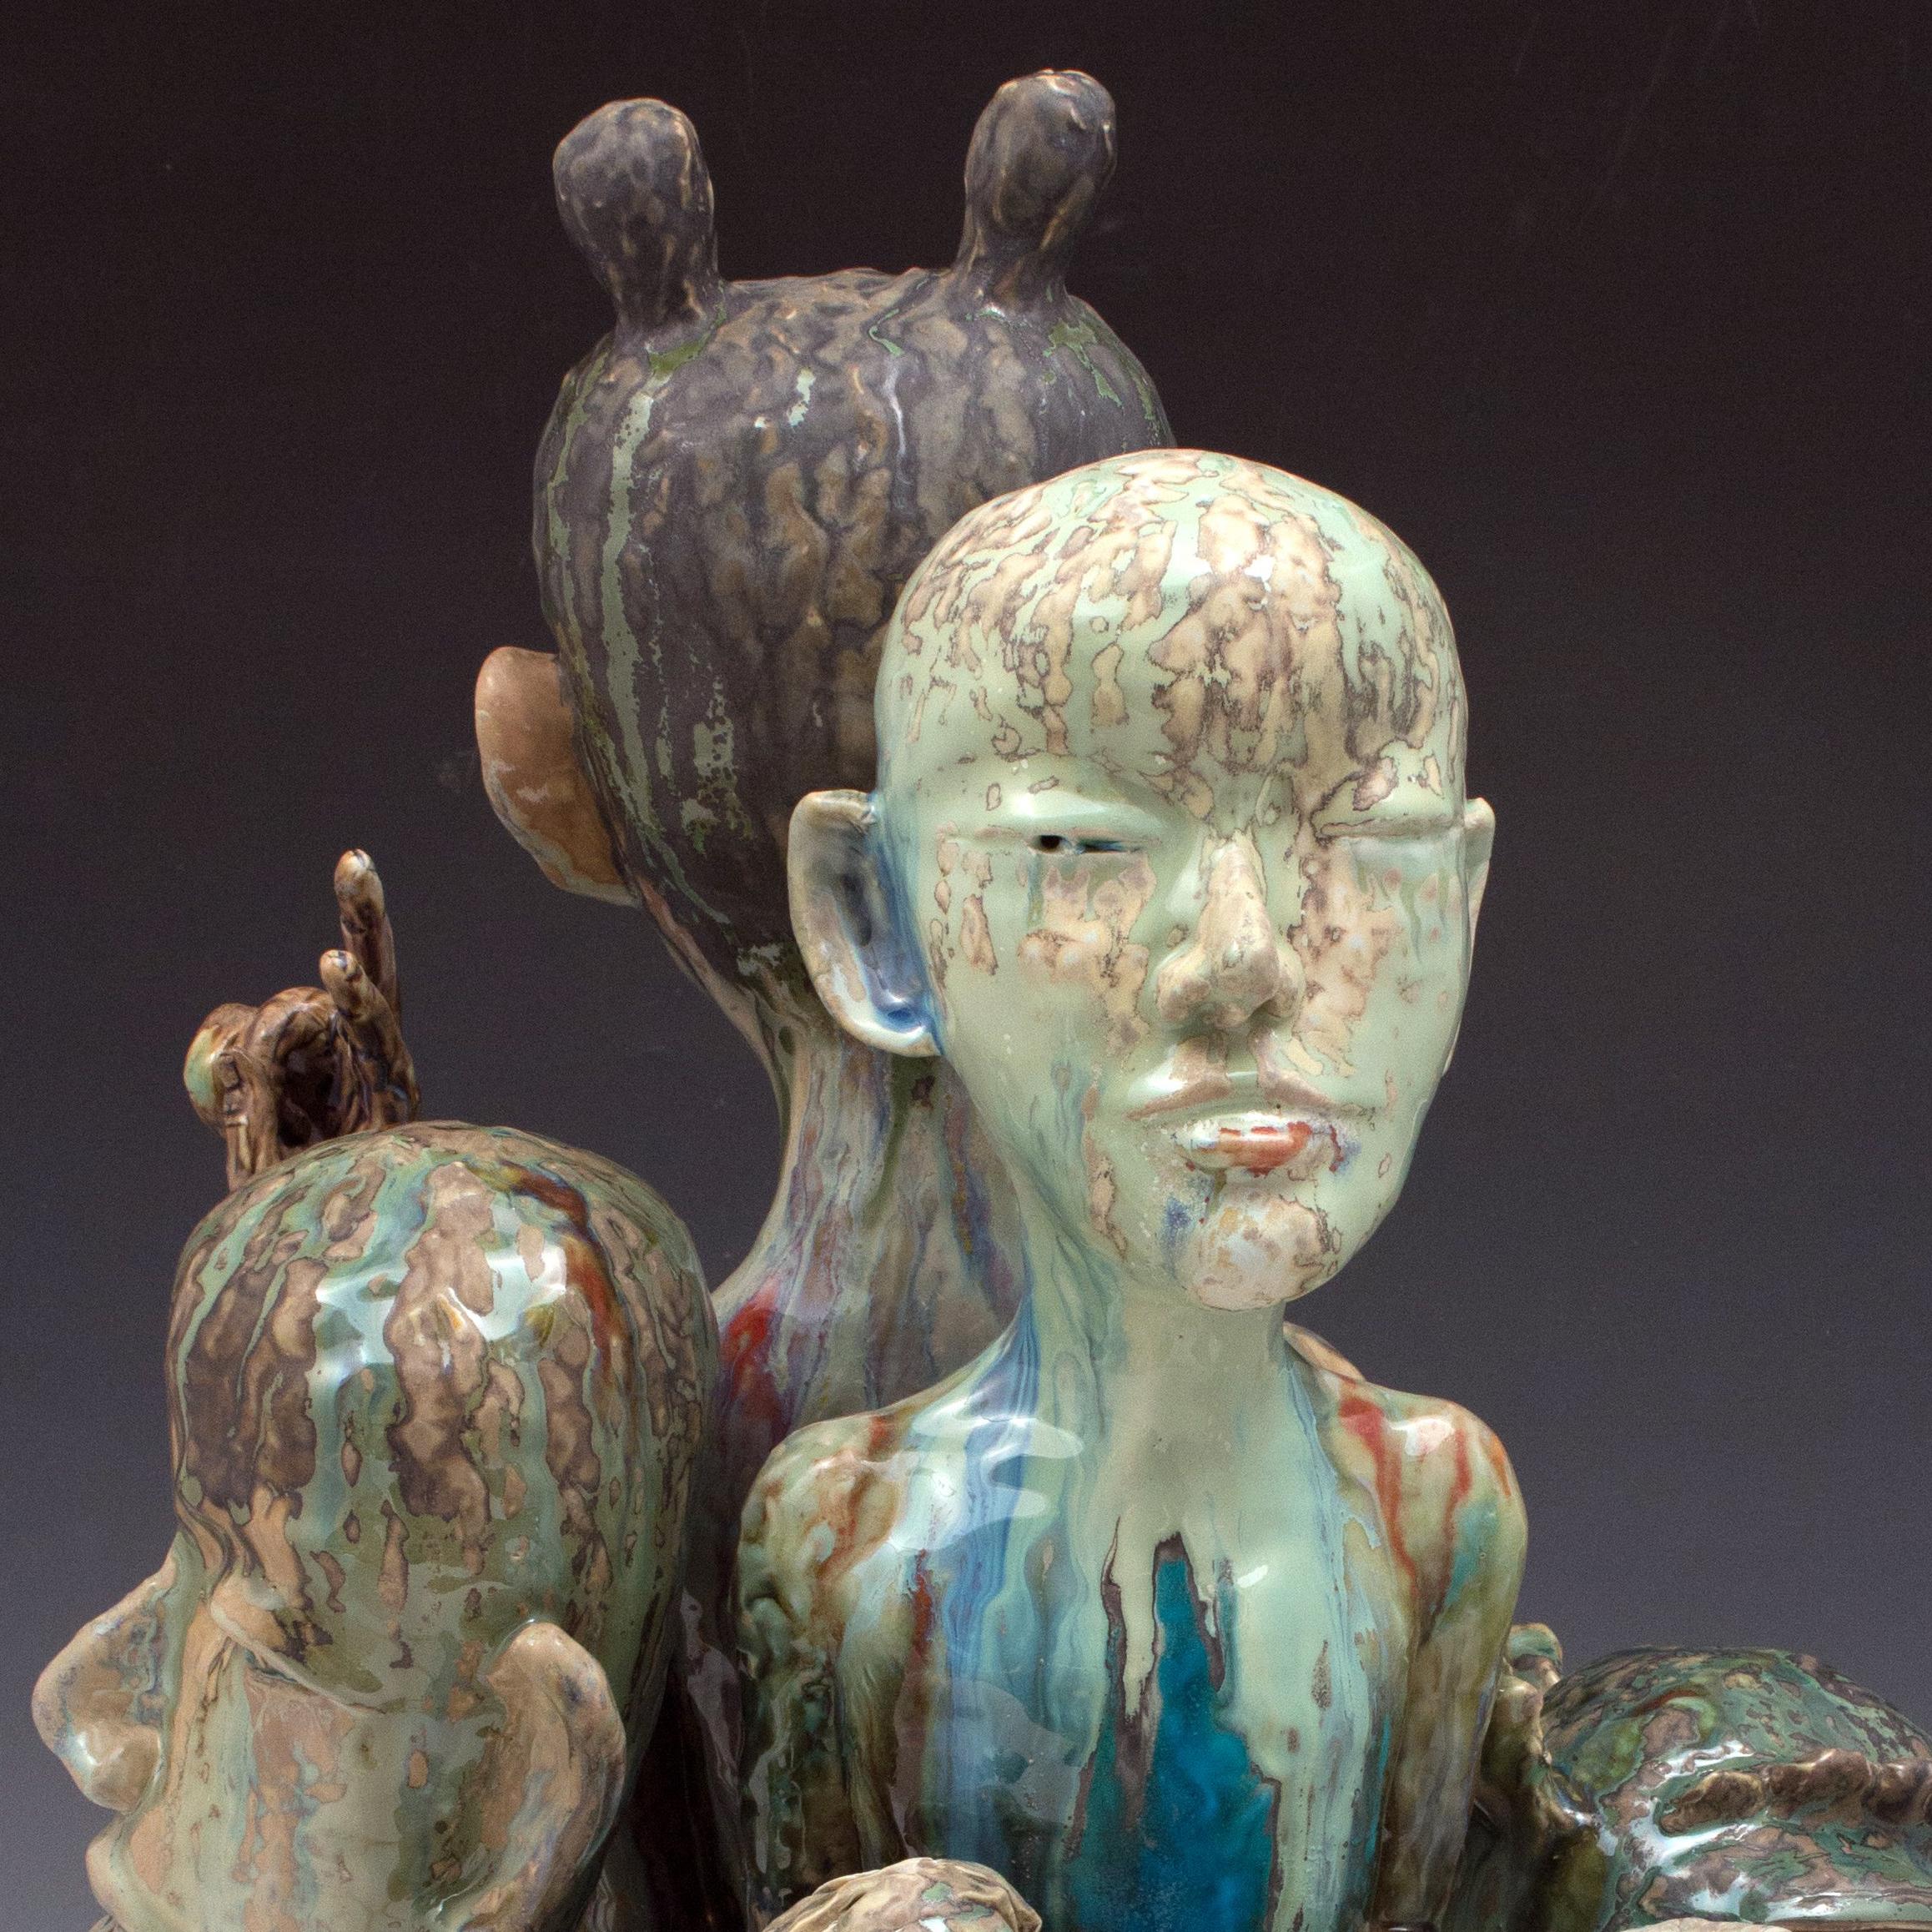 Die keramischen Skulpturen von SunKoo Yuh bestehen aus engen Gruppierungen verschiedener Formen, darunter Pflanzen, Tiere, Fische und menschliche Figuren. Während die koreanische Kunst, der Buddhismus und der konfuzianische Glaube einige Aspekte